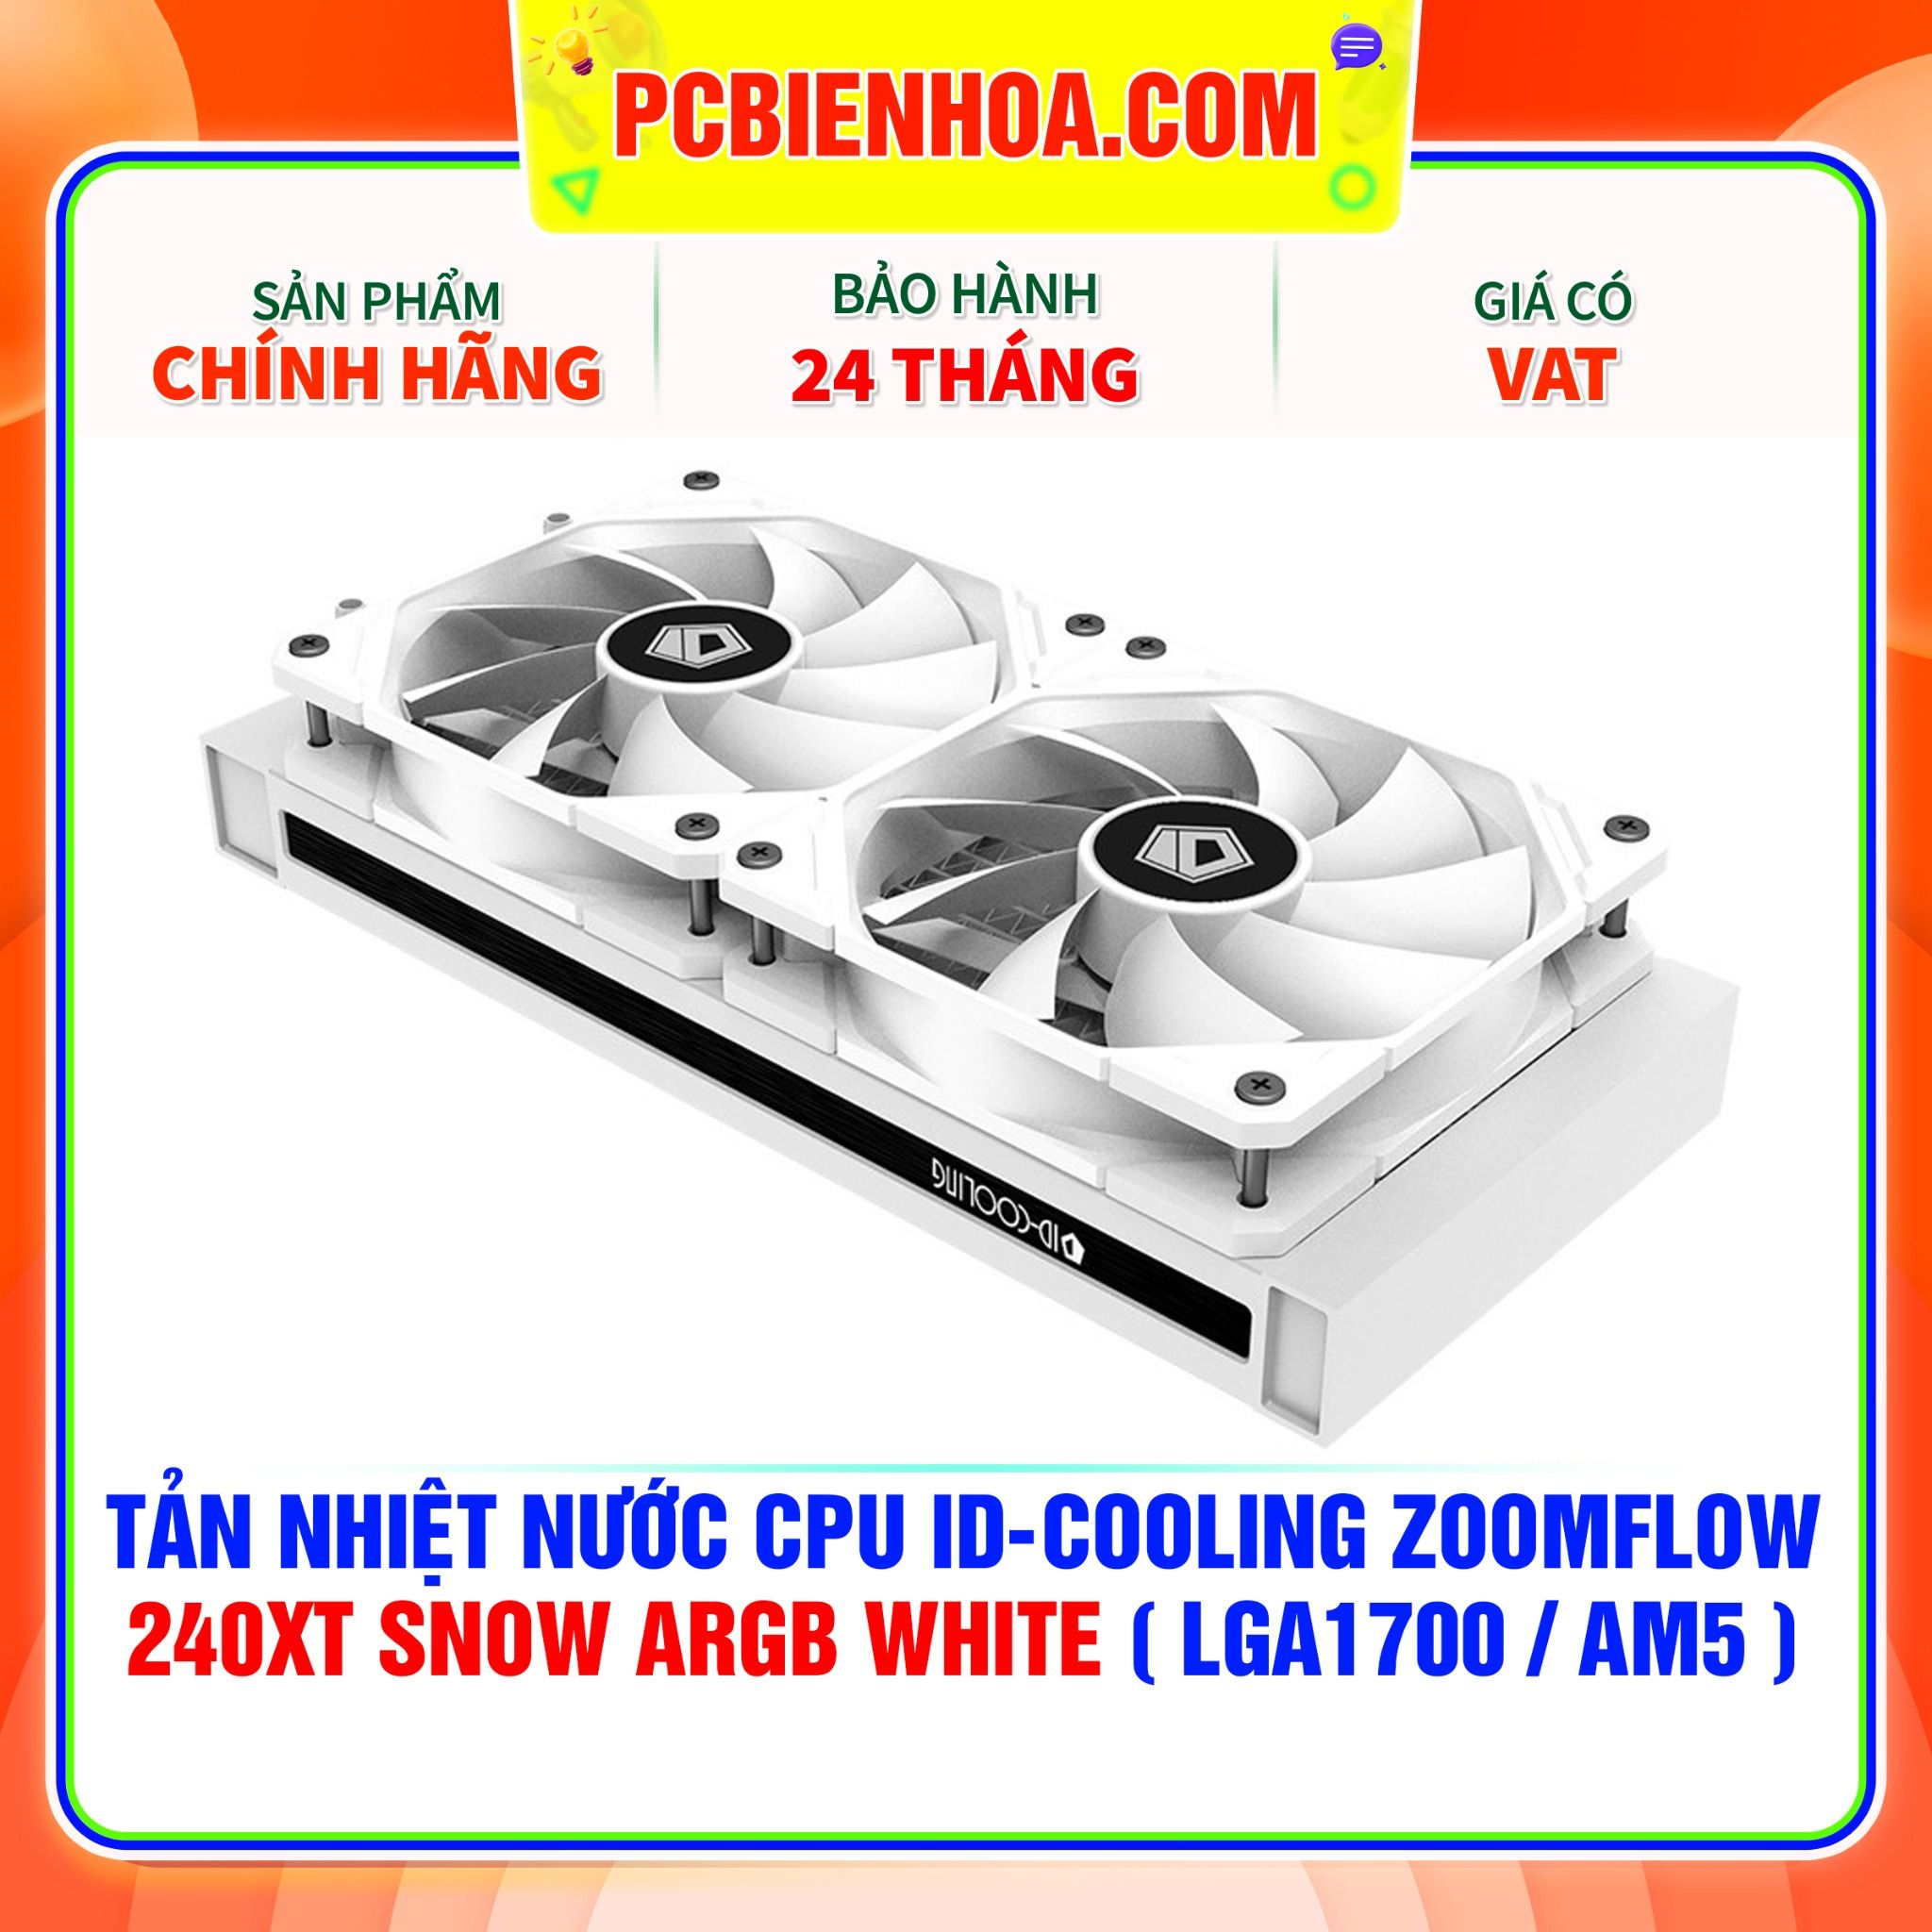  TẢN NHIỆT NƯỚC CPU ID-COOLING ZOOMFLOW 240XT SNOW ARGB WHITE ( HỖ TRỢ SOCKET LGA1700 / AM5 ) 